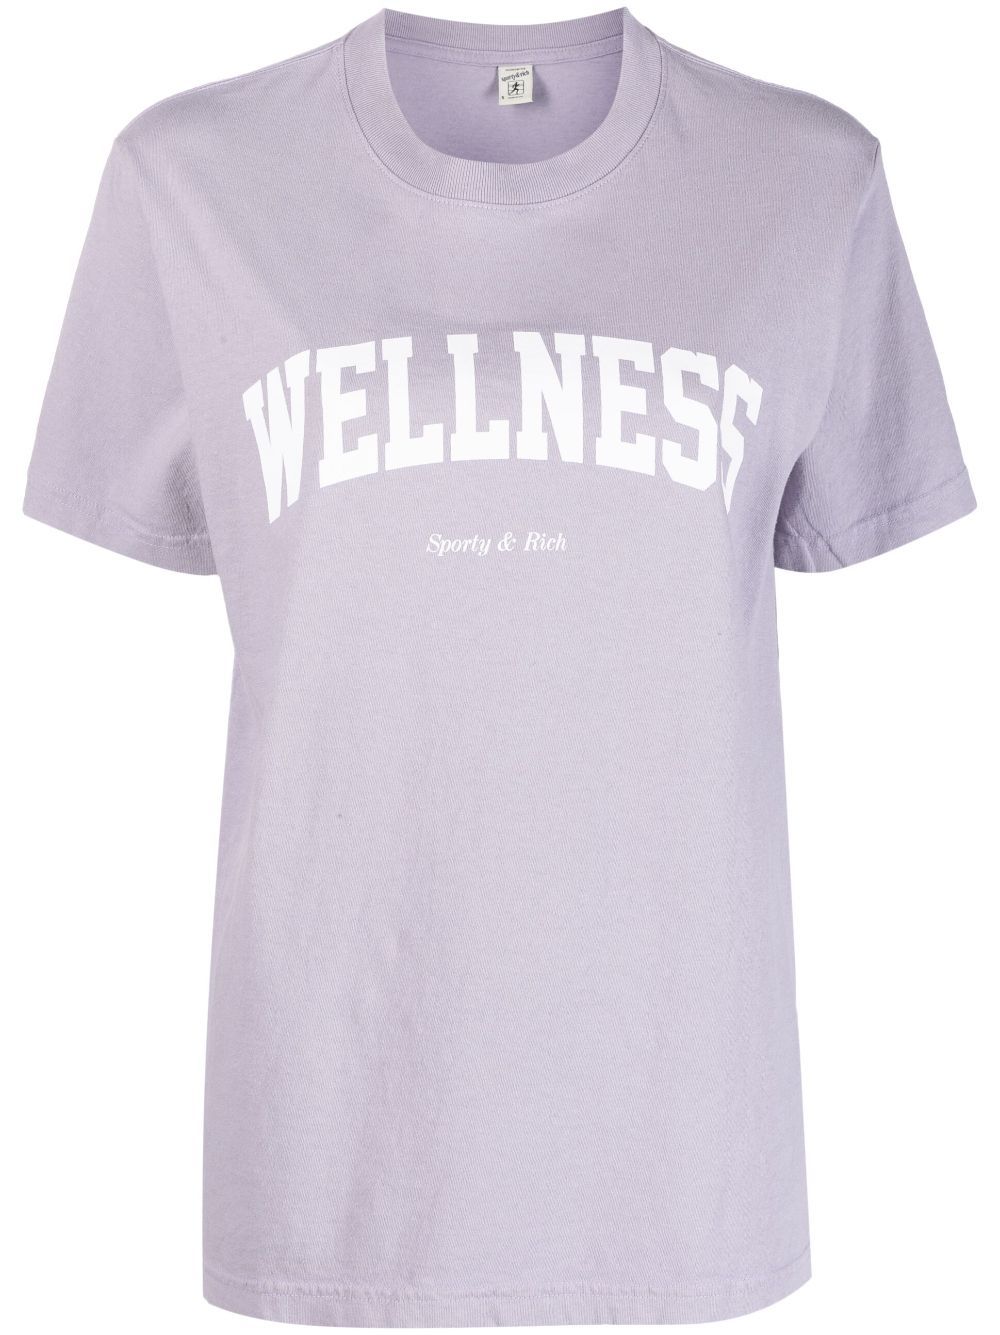 SPORTY & RICH-Wellness Ivy T Shirt Faded-TS835LI LILAC